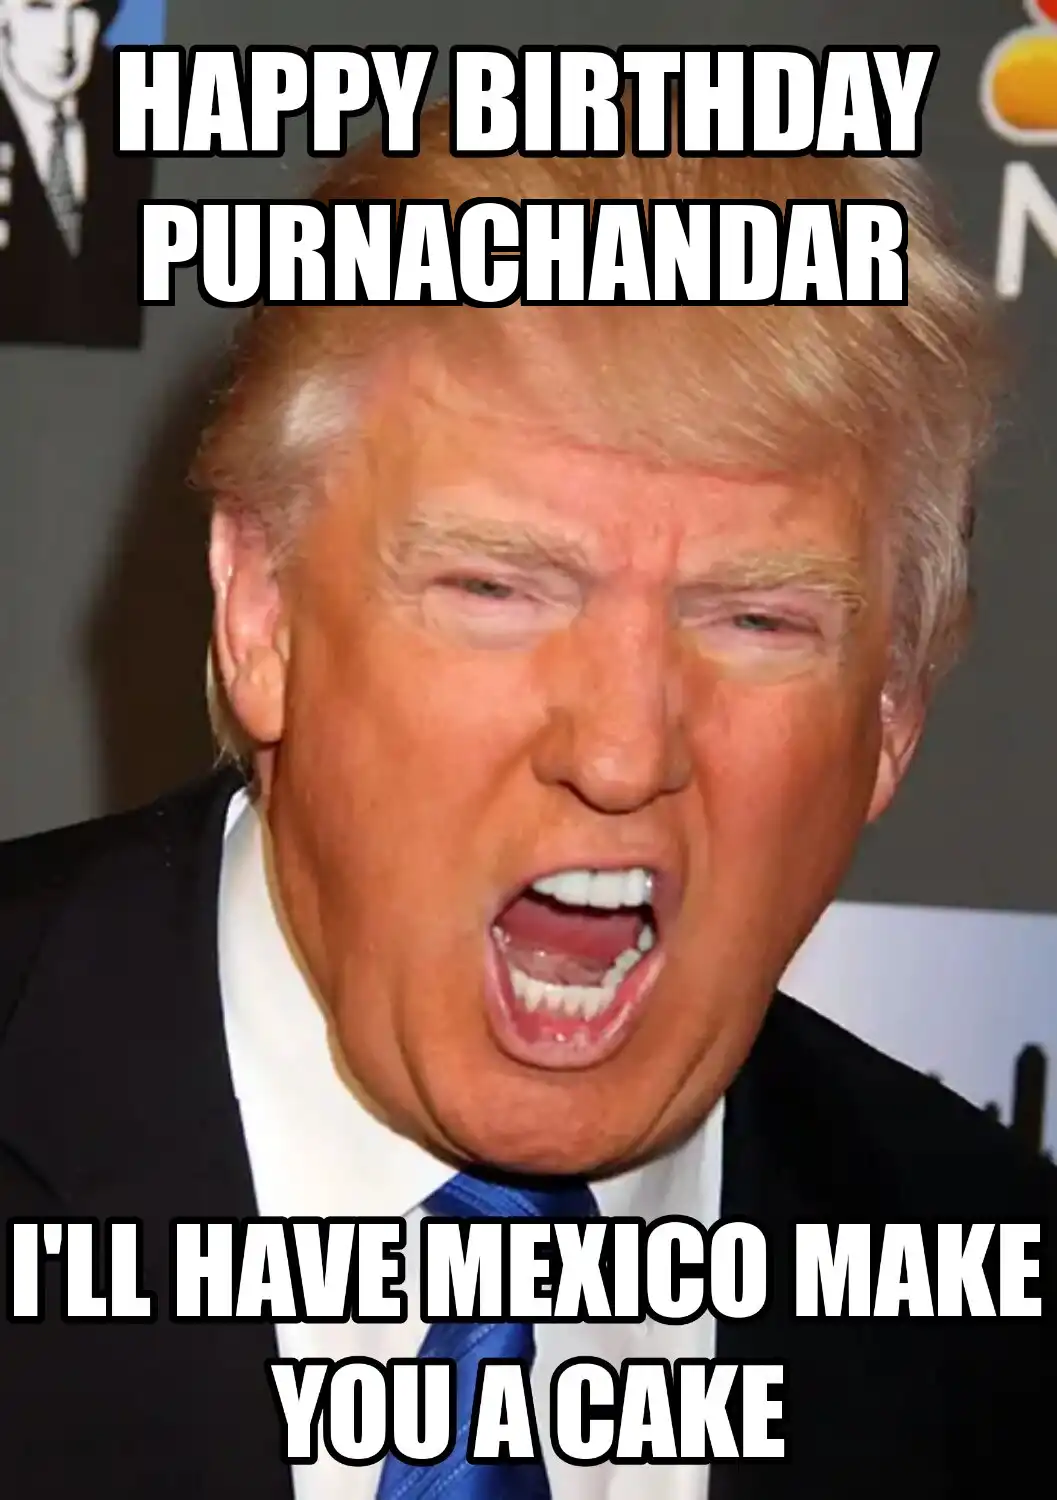 Happy Birthday Purnachandar Mexico Make You A Cake Meme